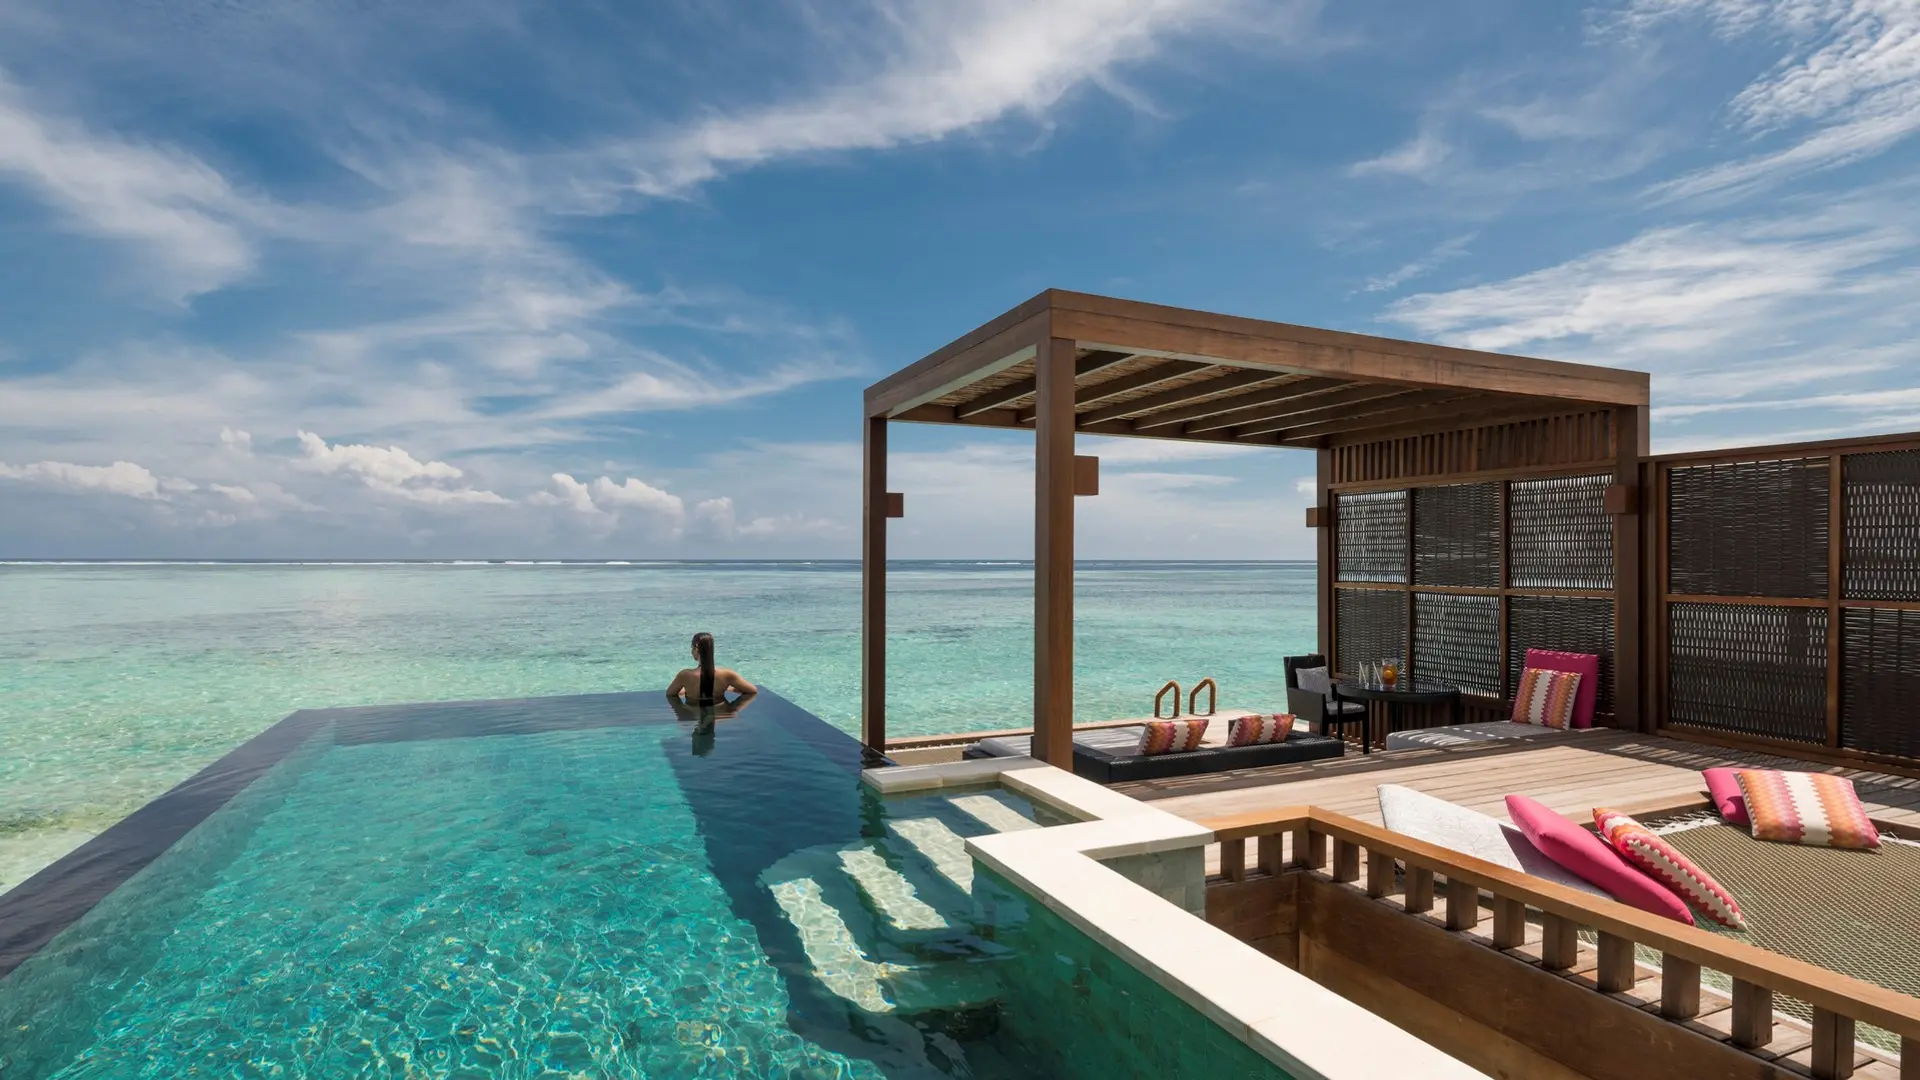 Hotel review Accommodation' - Four Seasons Resort Maldives at Kuda Huraa - 10